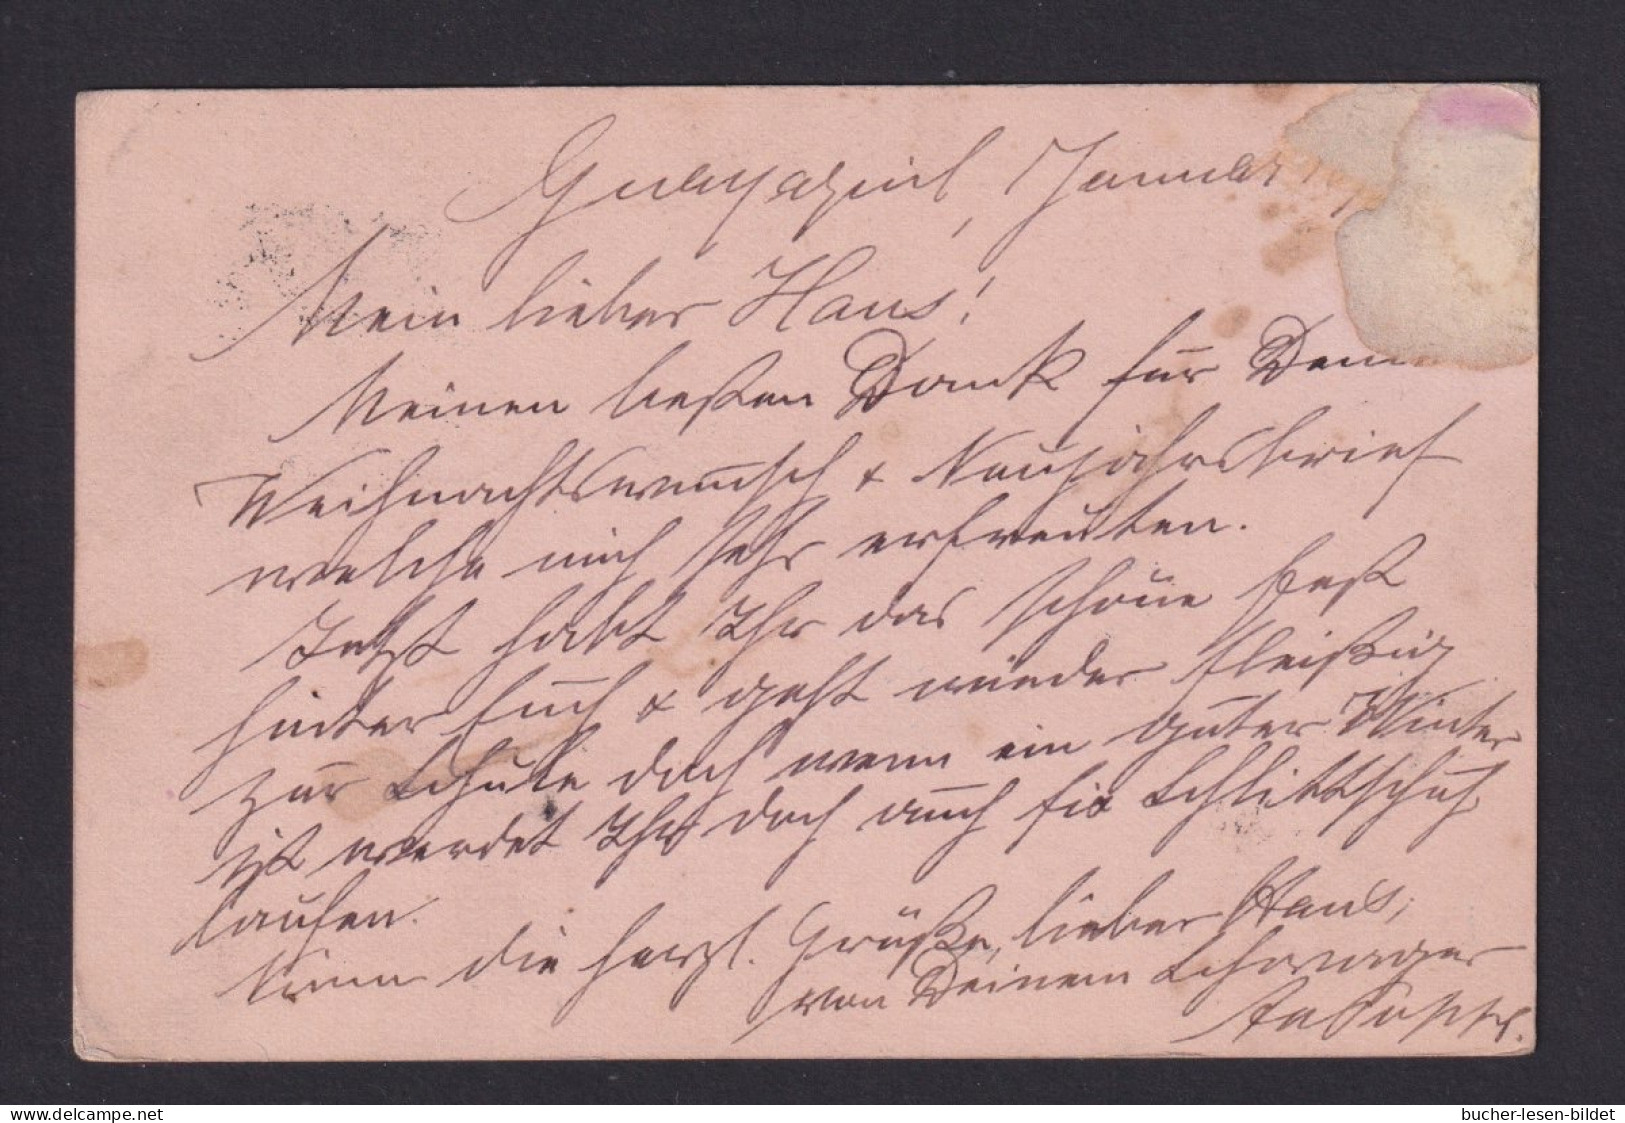 1890 - 3 C. Ganzsache Ab Guayaquil Nach Altona - Equateur